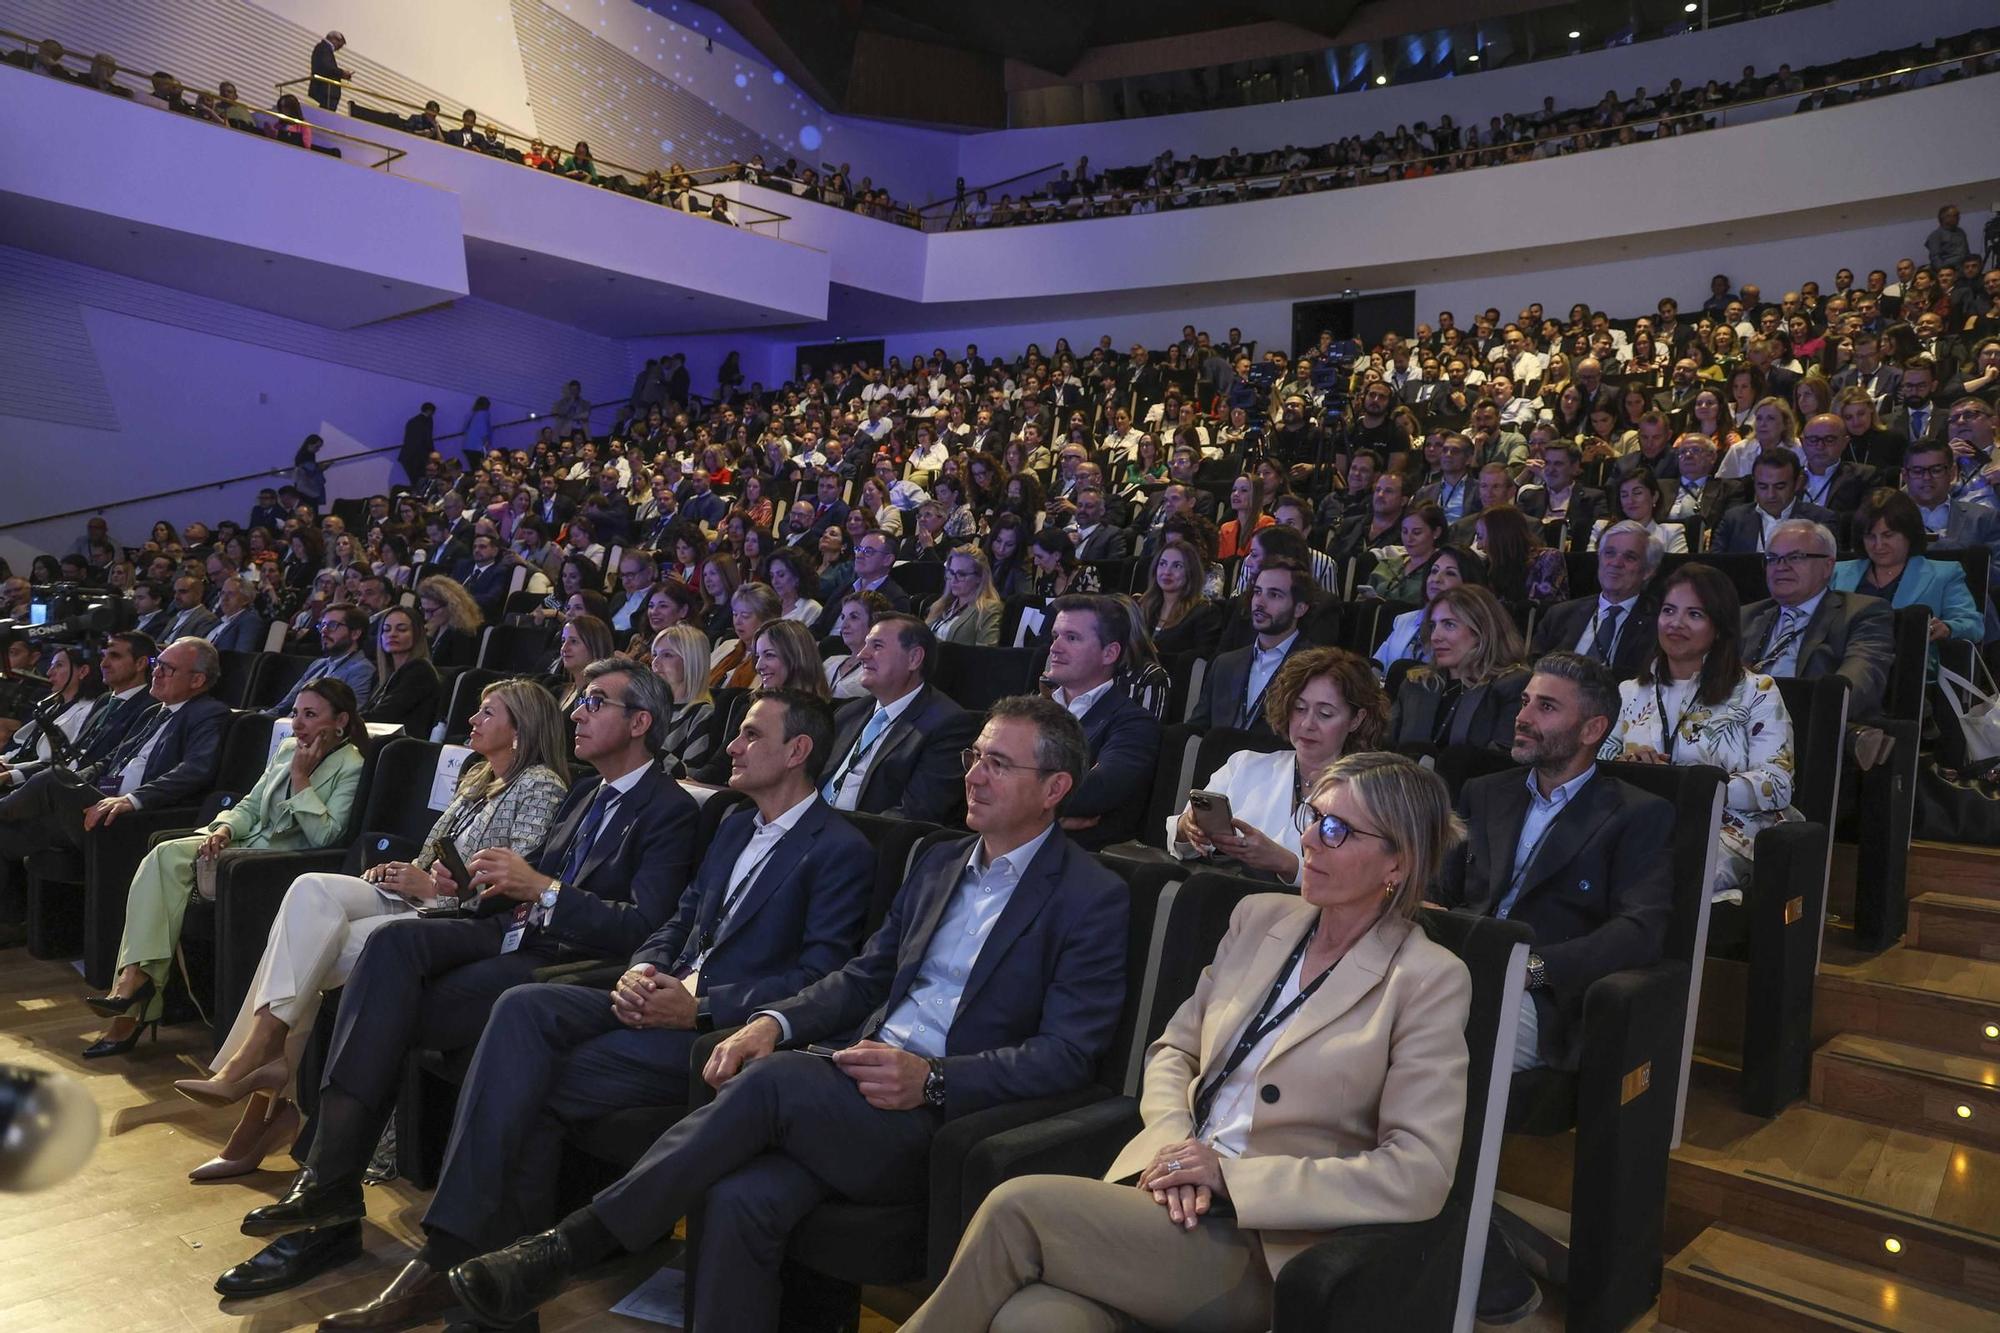 Congreso Opendir que organiza El Círculo Directivos de Alicante